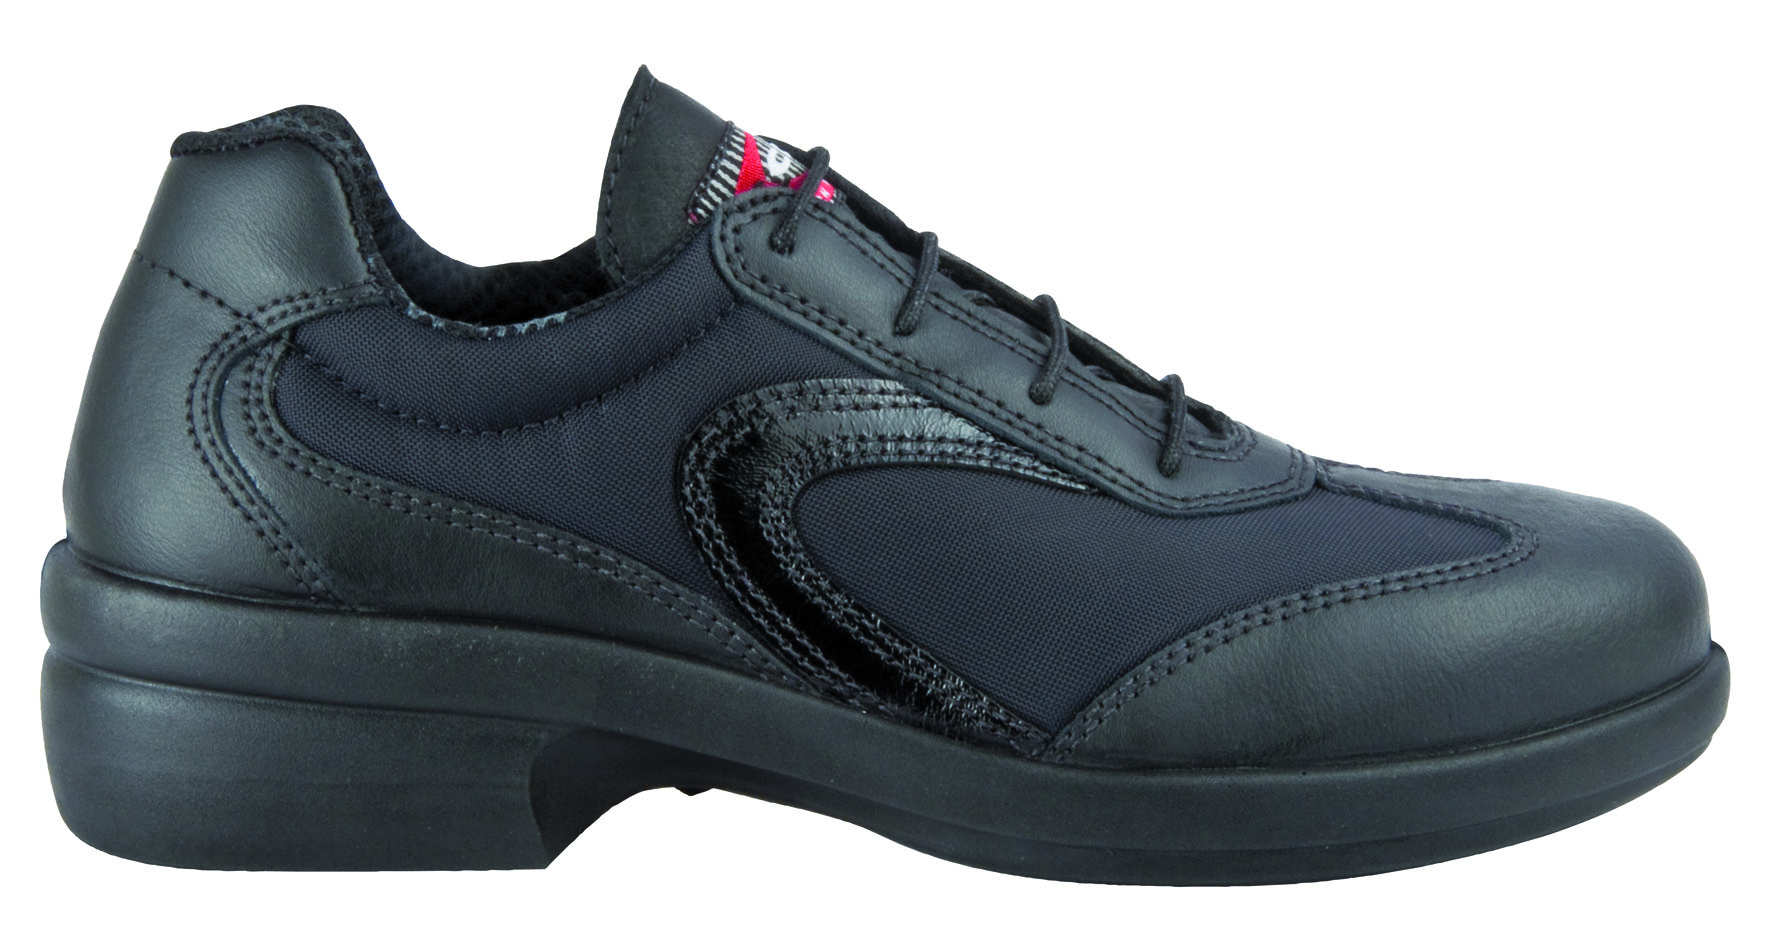 COFRA-Footwear, MELANIE, S1, SRC, Sicherheits-Arbeits-Berufs-Schuhe, Halbschuhe, schwarz